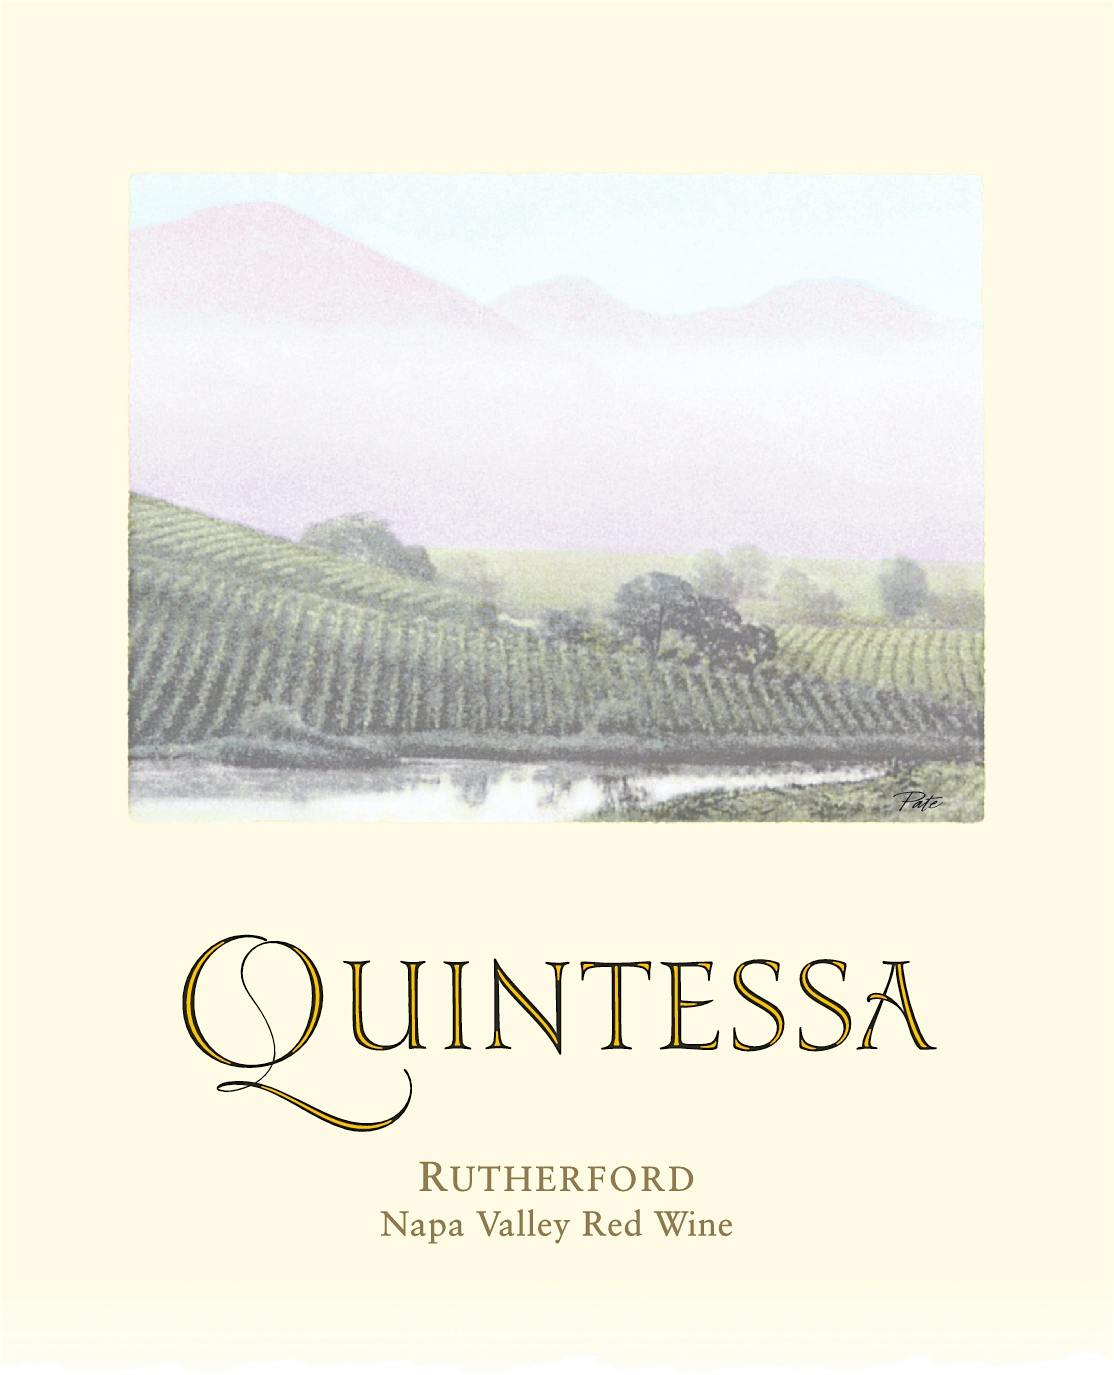 Label for Quintessa